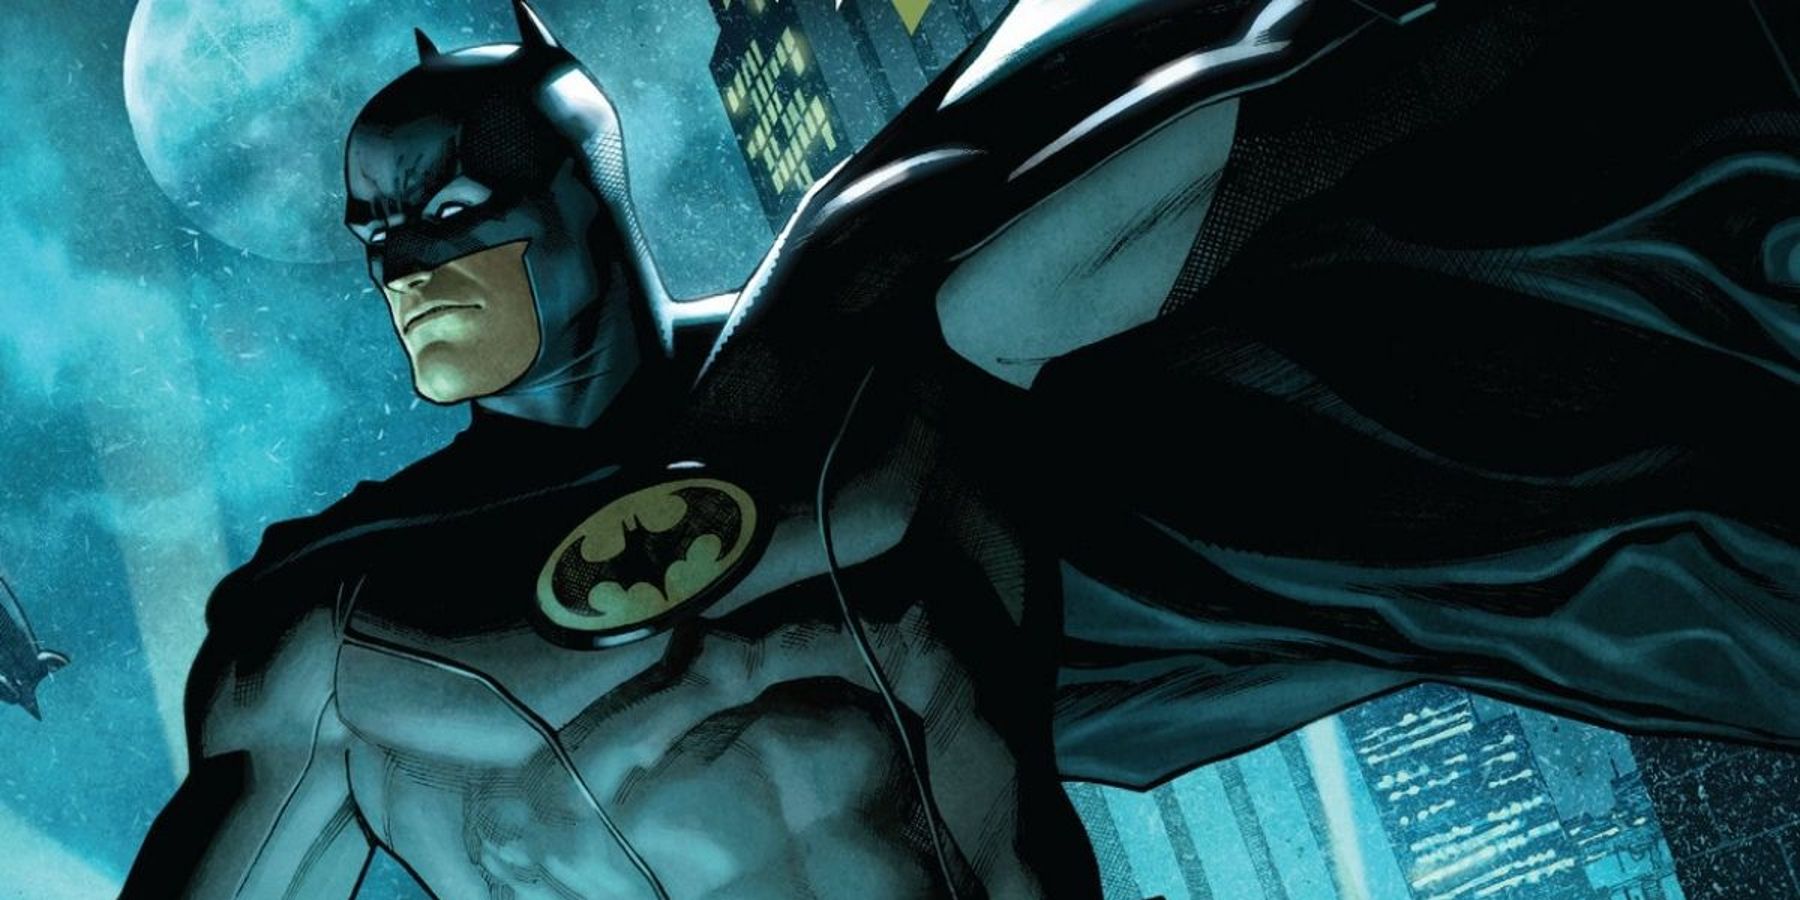 Batman in his Batman Incorporated suit overlooking Gotham City in DC comics